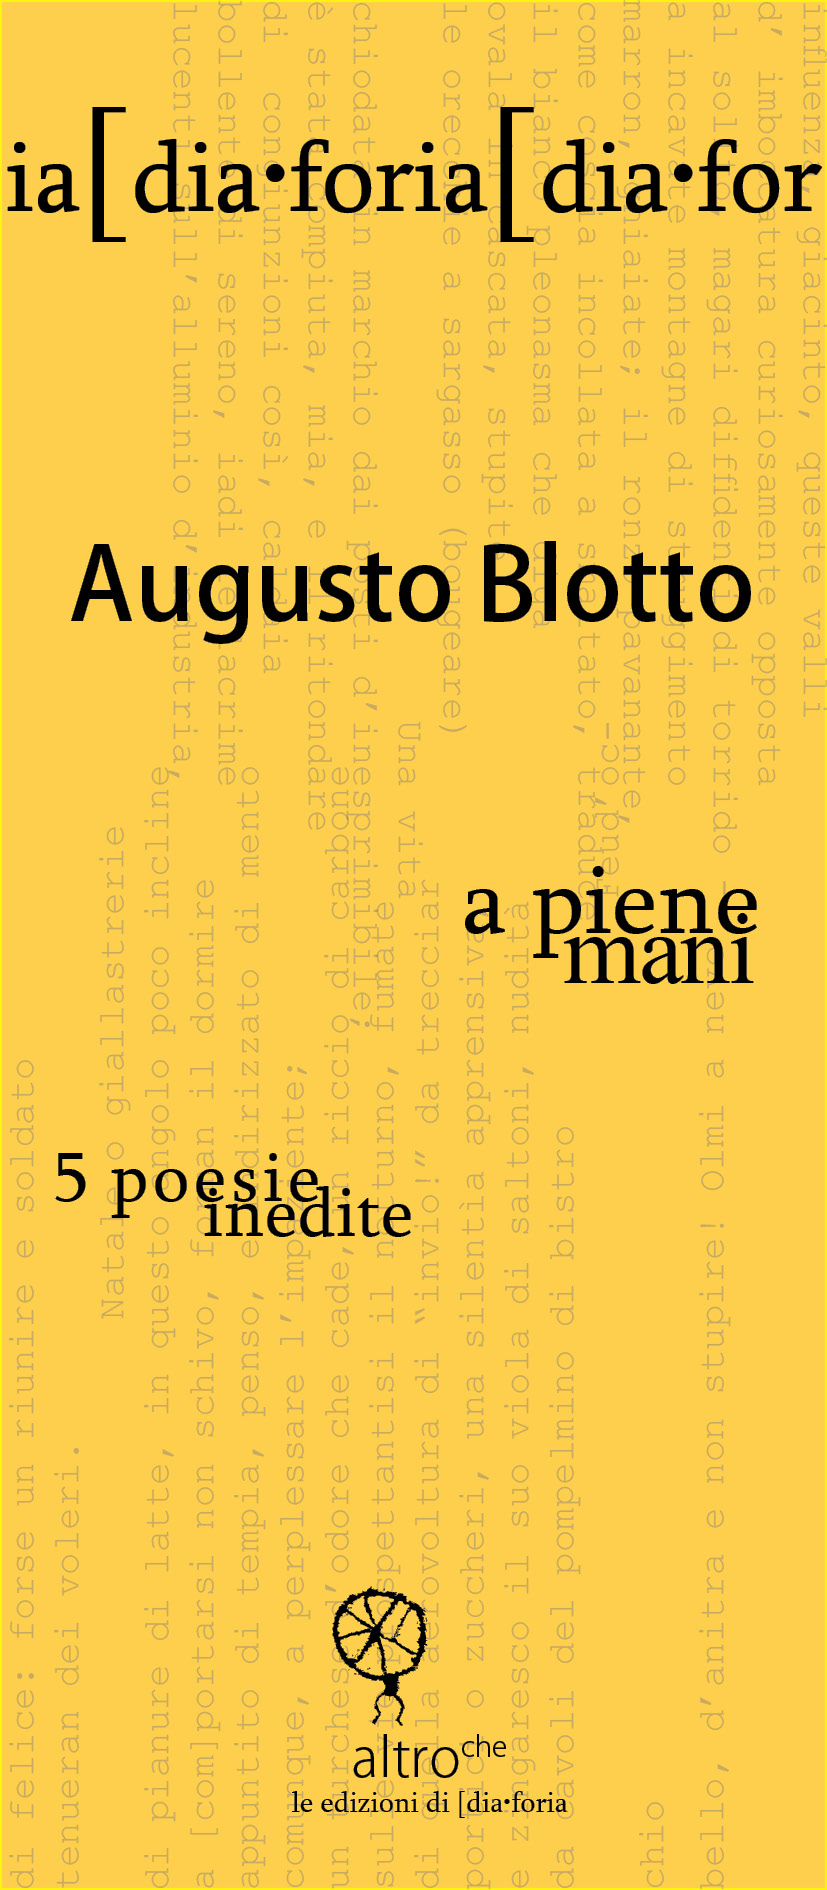 07 Augusto Blotto - a piene mani